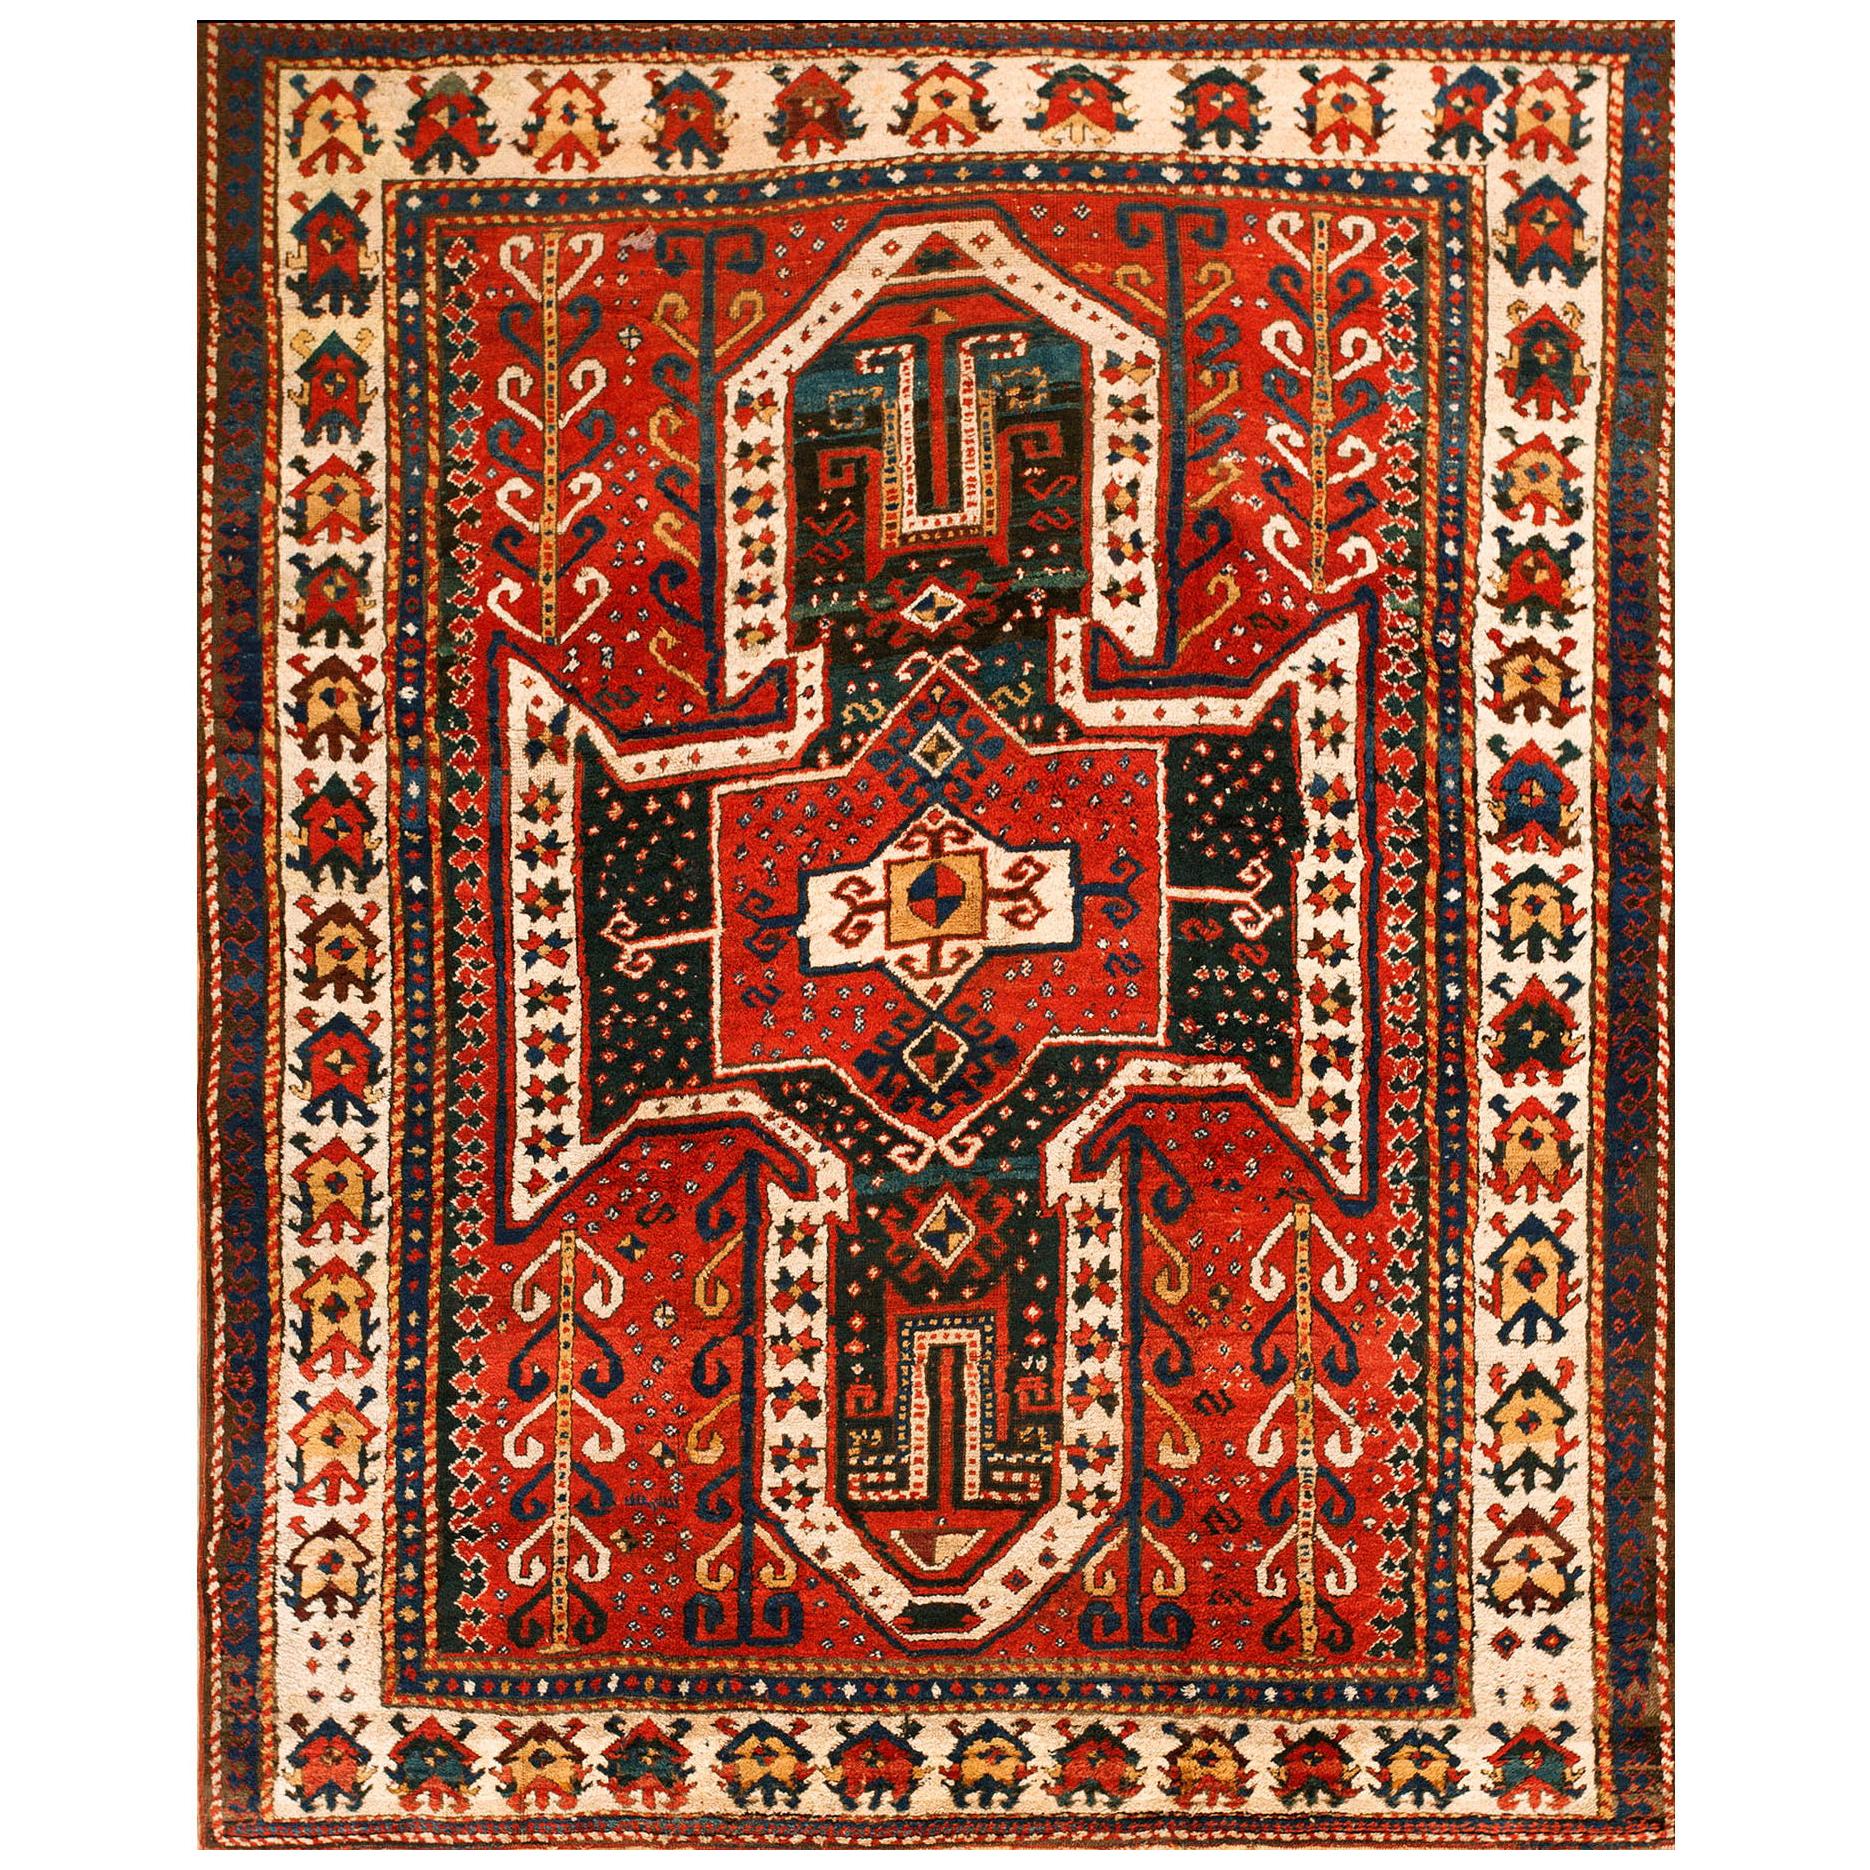 19th Century Caucasian Sewan Kazak Carpet ( 5'10"  x 6'10" - 177 x 208 )